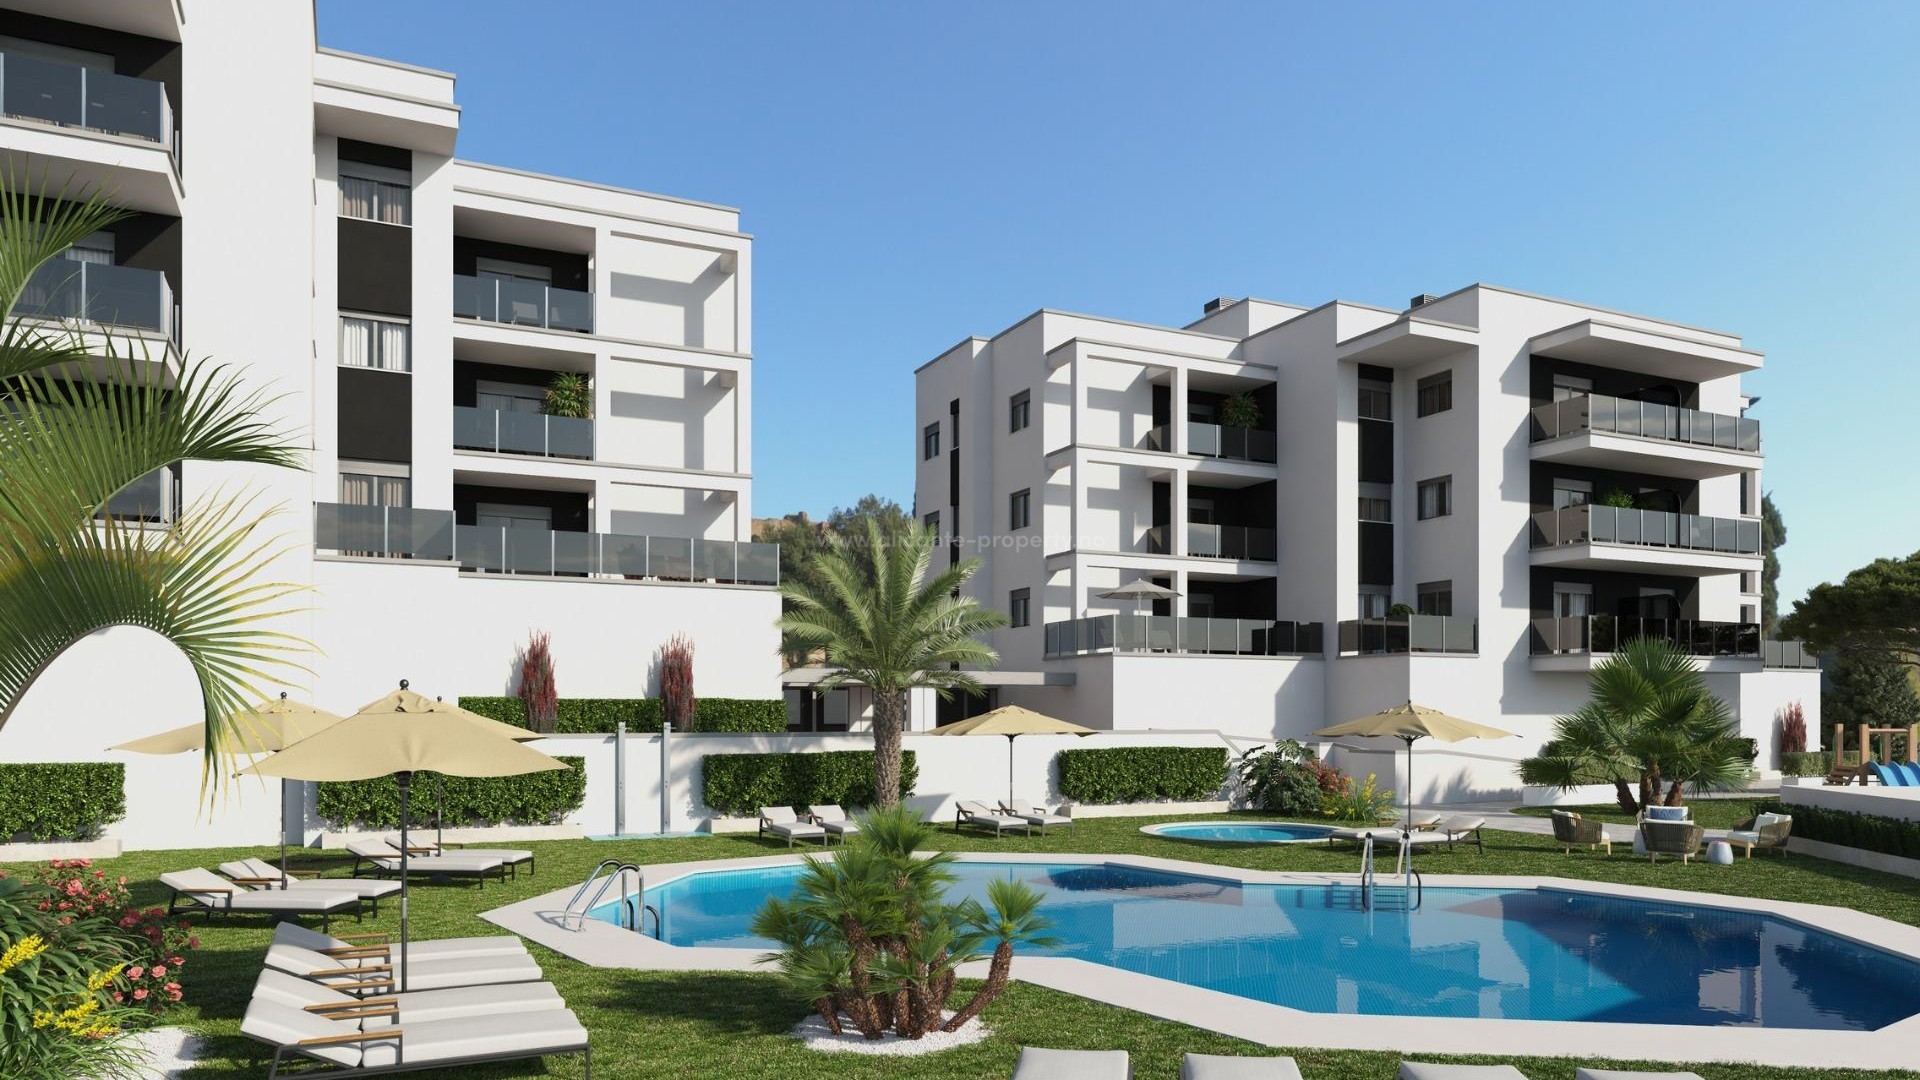 Helt nytt boligkompleks med leiligheter/toppleiligheter i Villajoyosa, 2/3 soverom, 2 bad, terrasser, fellesområder med basseng, alle med parkeringsplass